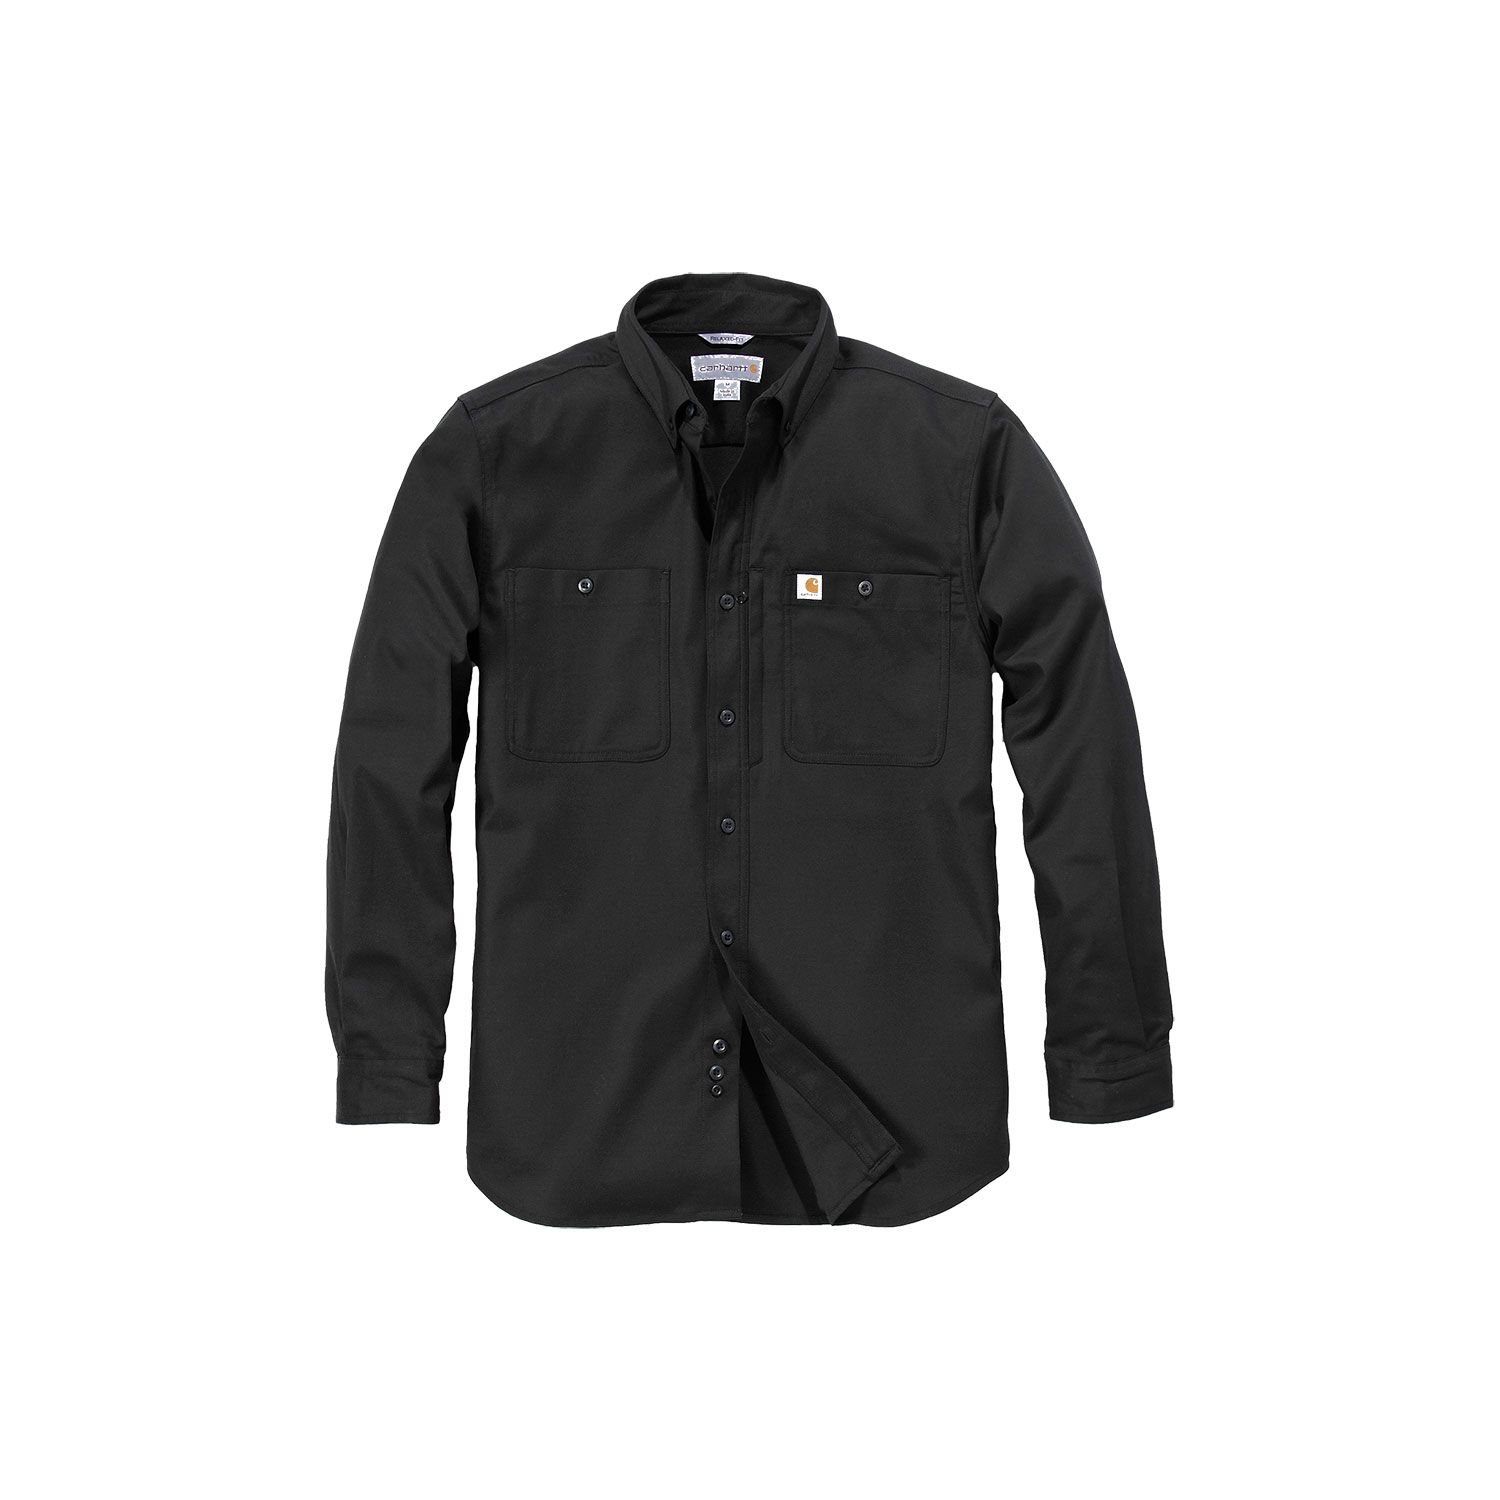 Carhartt Rugged Professional long sleeve shirt | navy blue | XL ...